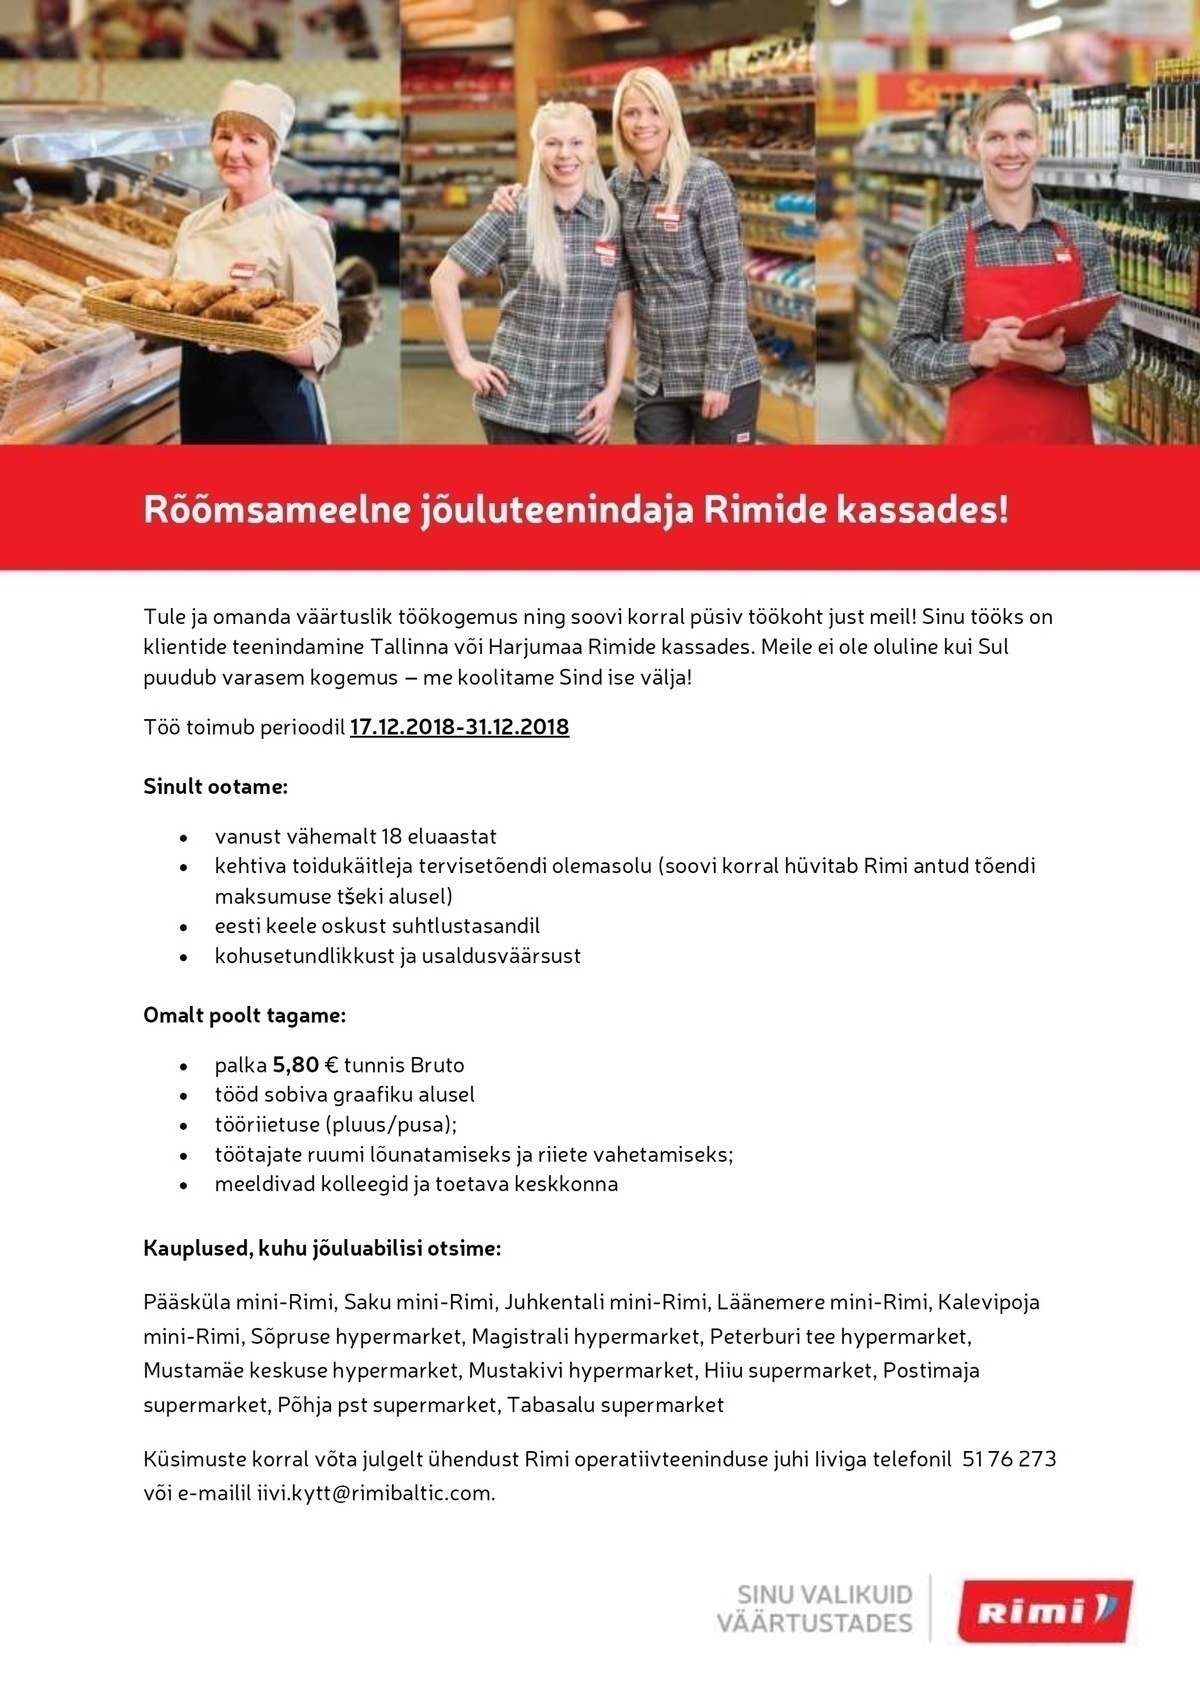 Rimi Eesti Food AS Jõuluteenindaja Tallinna ja Harjumaa Rimi kauplustes!